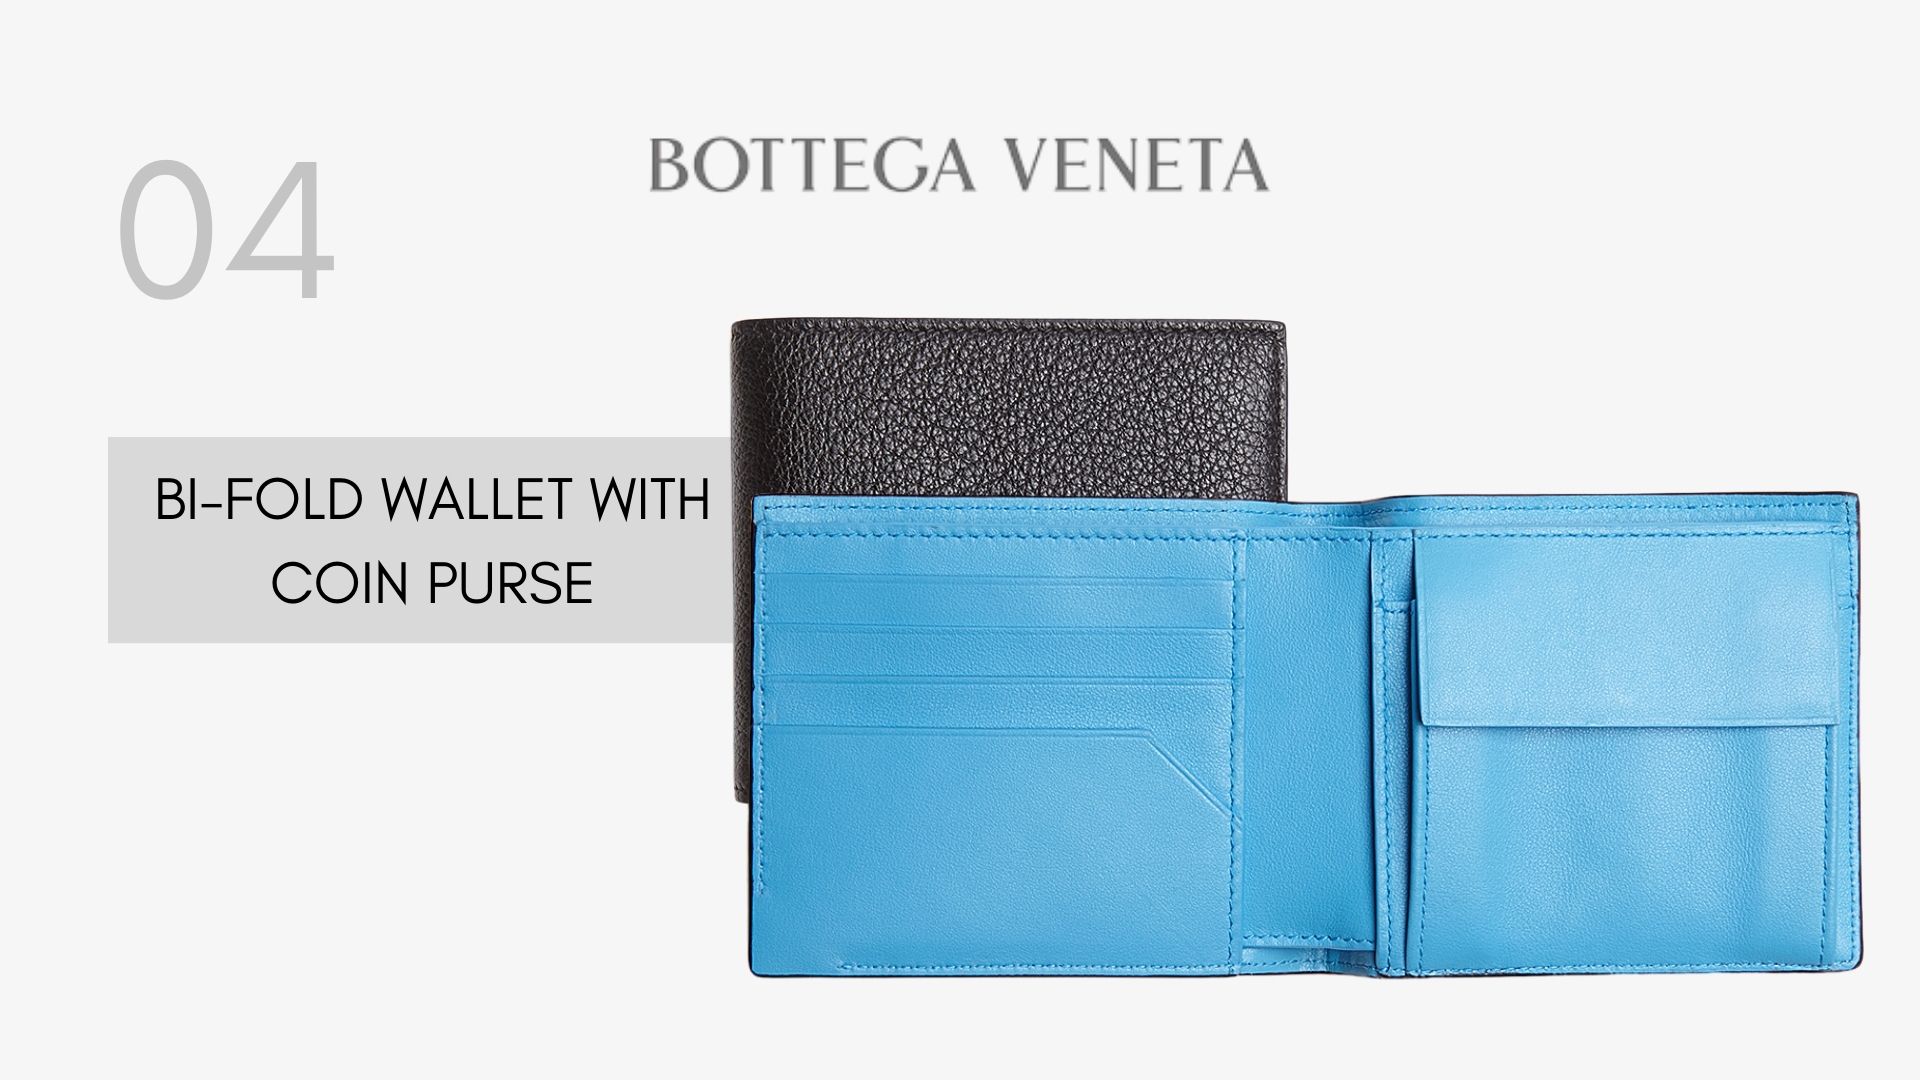 รวมกระเป๋าตังค์ Bottega Veneta รุ่นฮิตในปี 2020 BI-FOLD WALLET WITH COIN PURSE